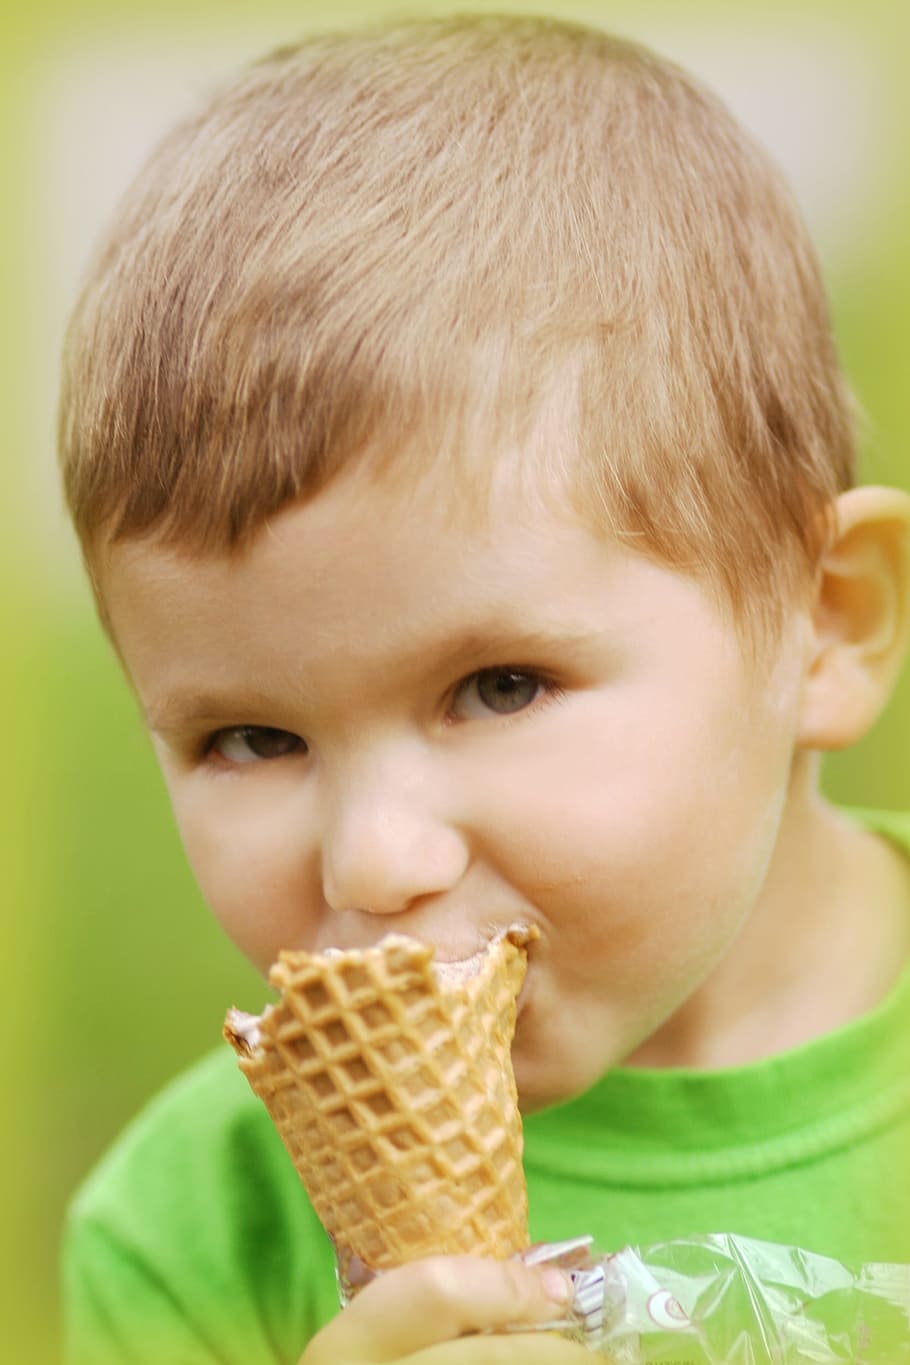 muchacho, morder, cono de helado, helado, gusto, alegría, matón, infancia, niño, niños